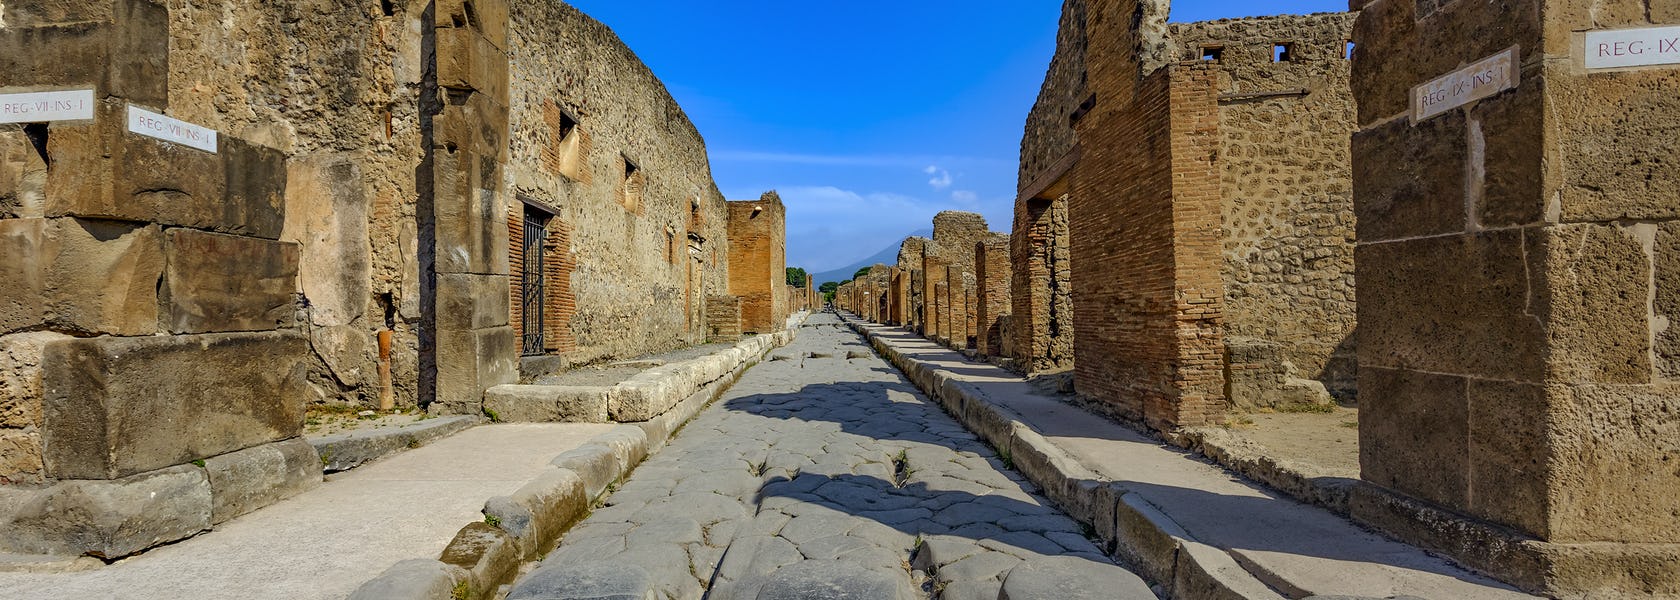 Biglietti d'ingresso agli Scavi di Pompei Musement